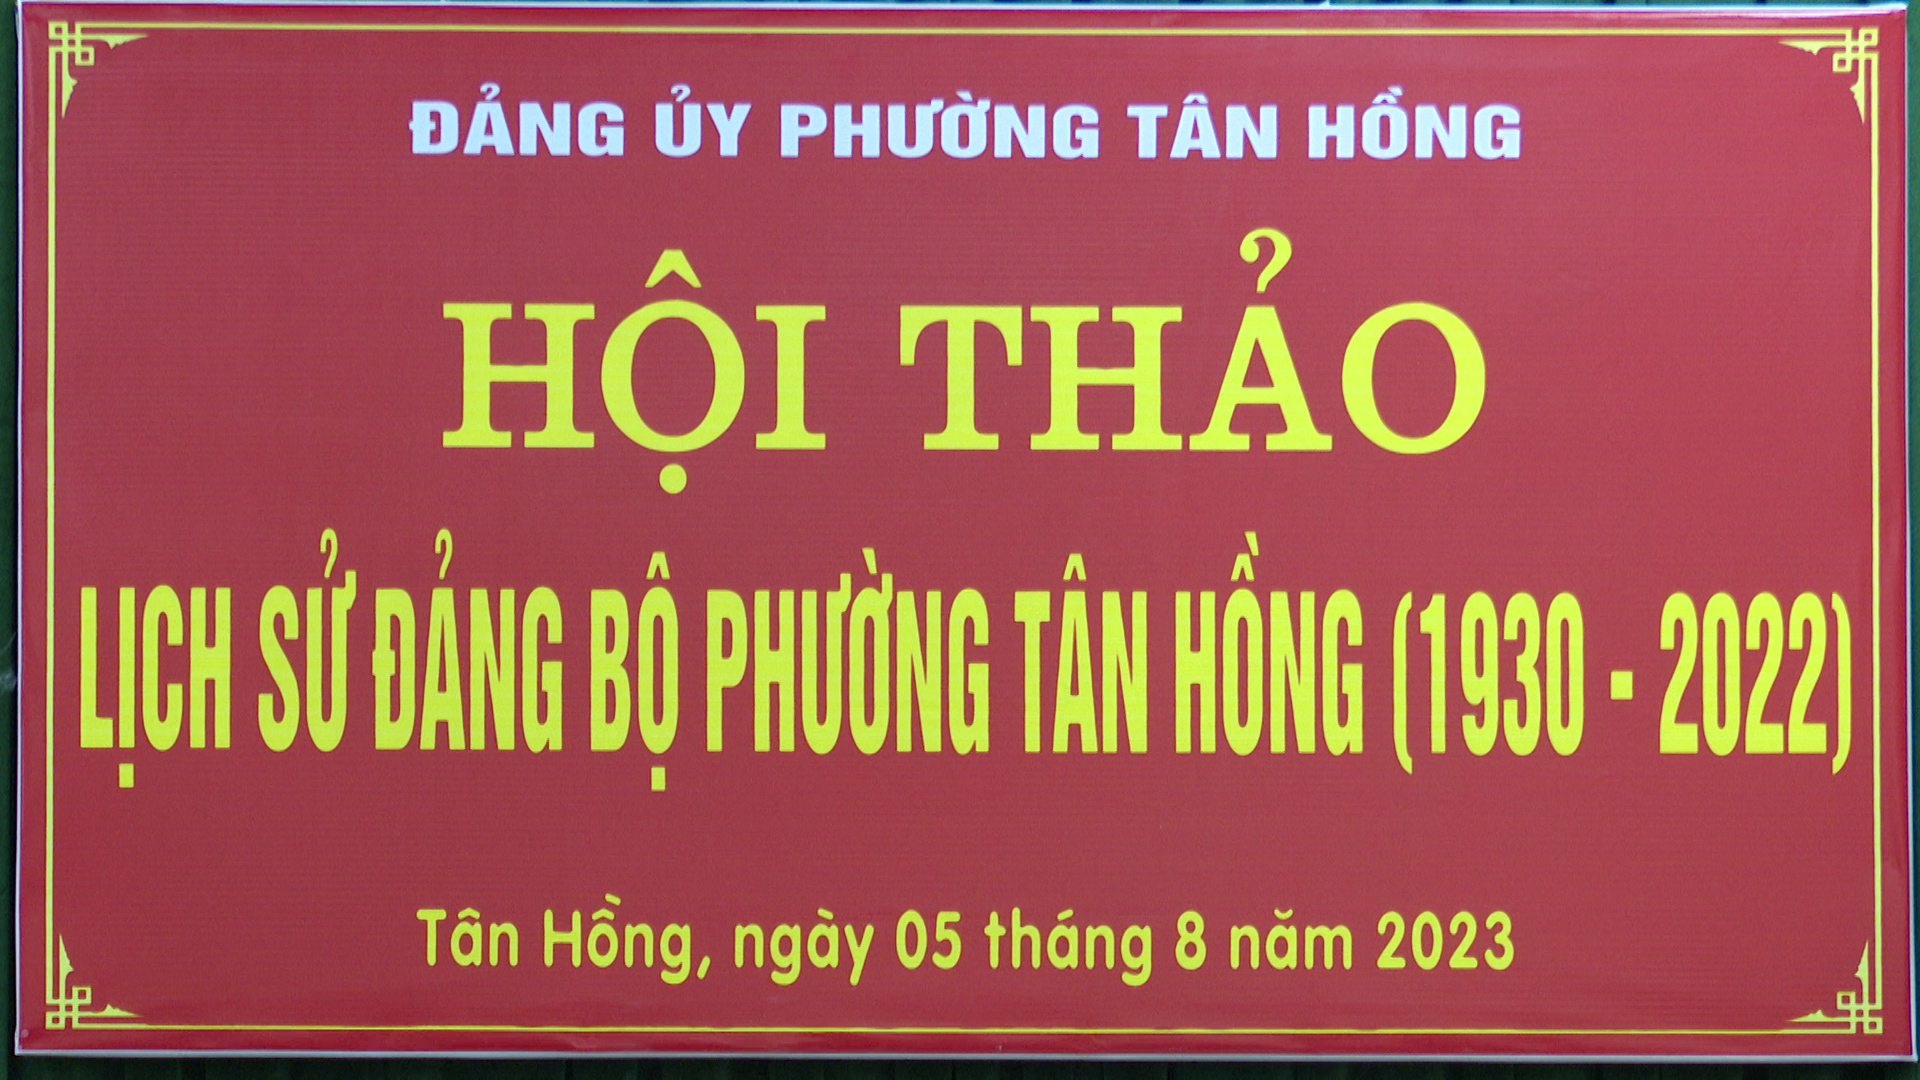 Tân Hồng hội thảo lịch sử Đảng bộ phường (1930 - 2022)